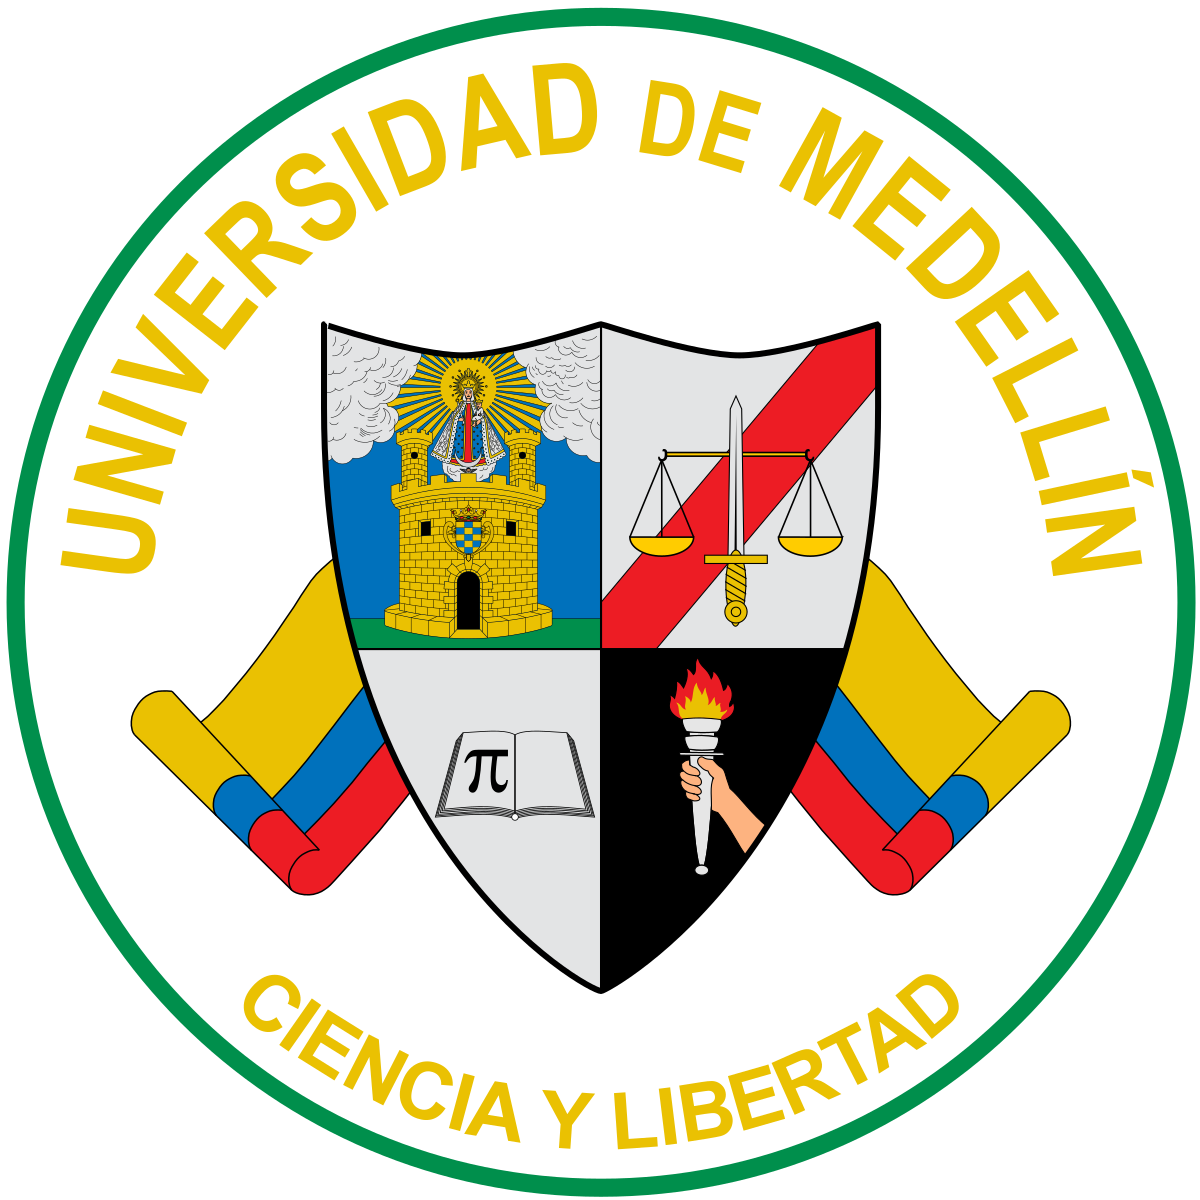 Universidad de Medellín